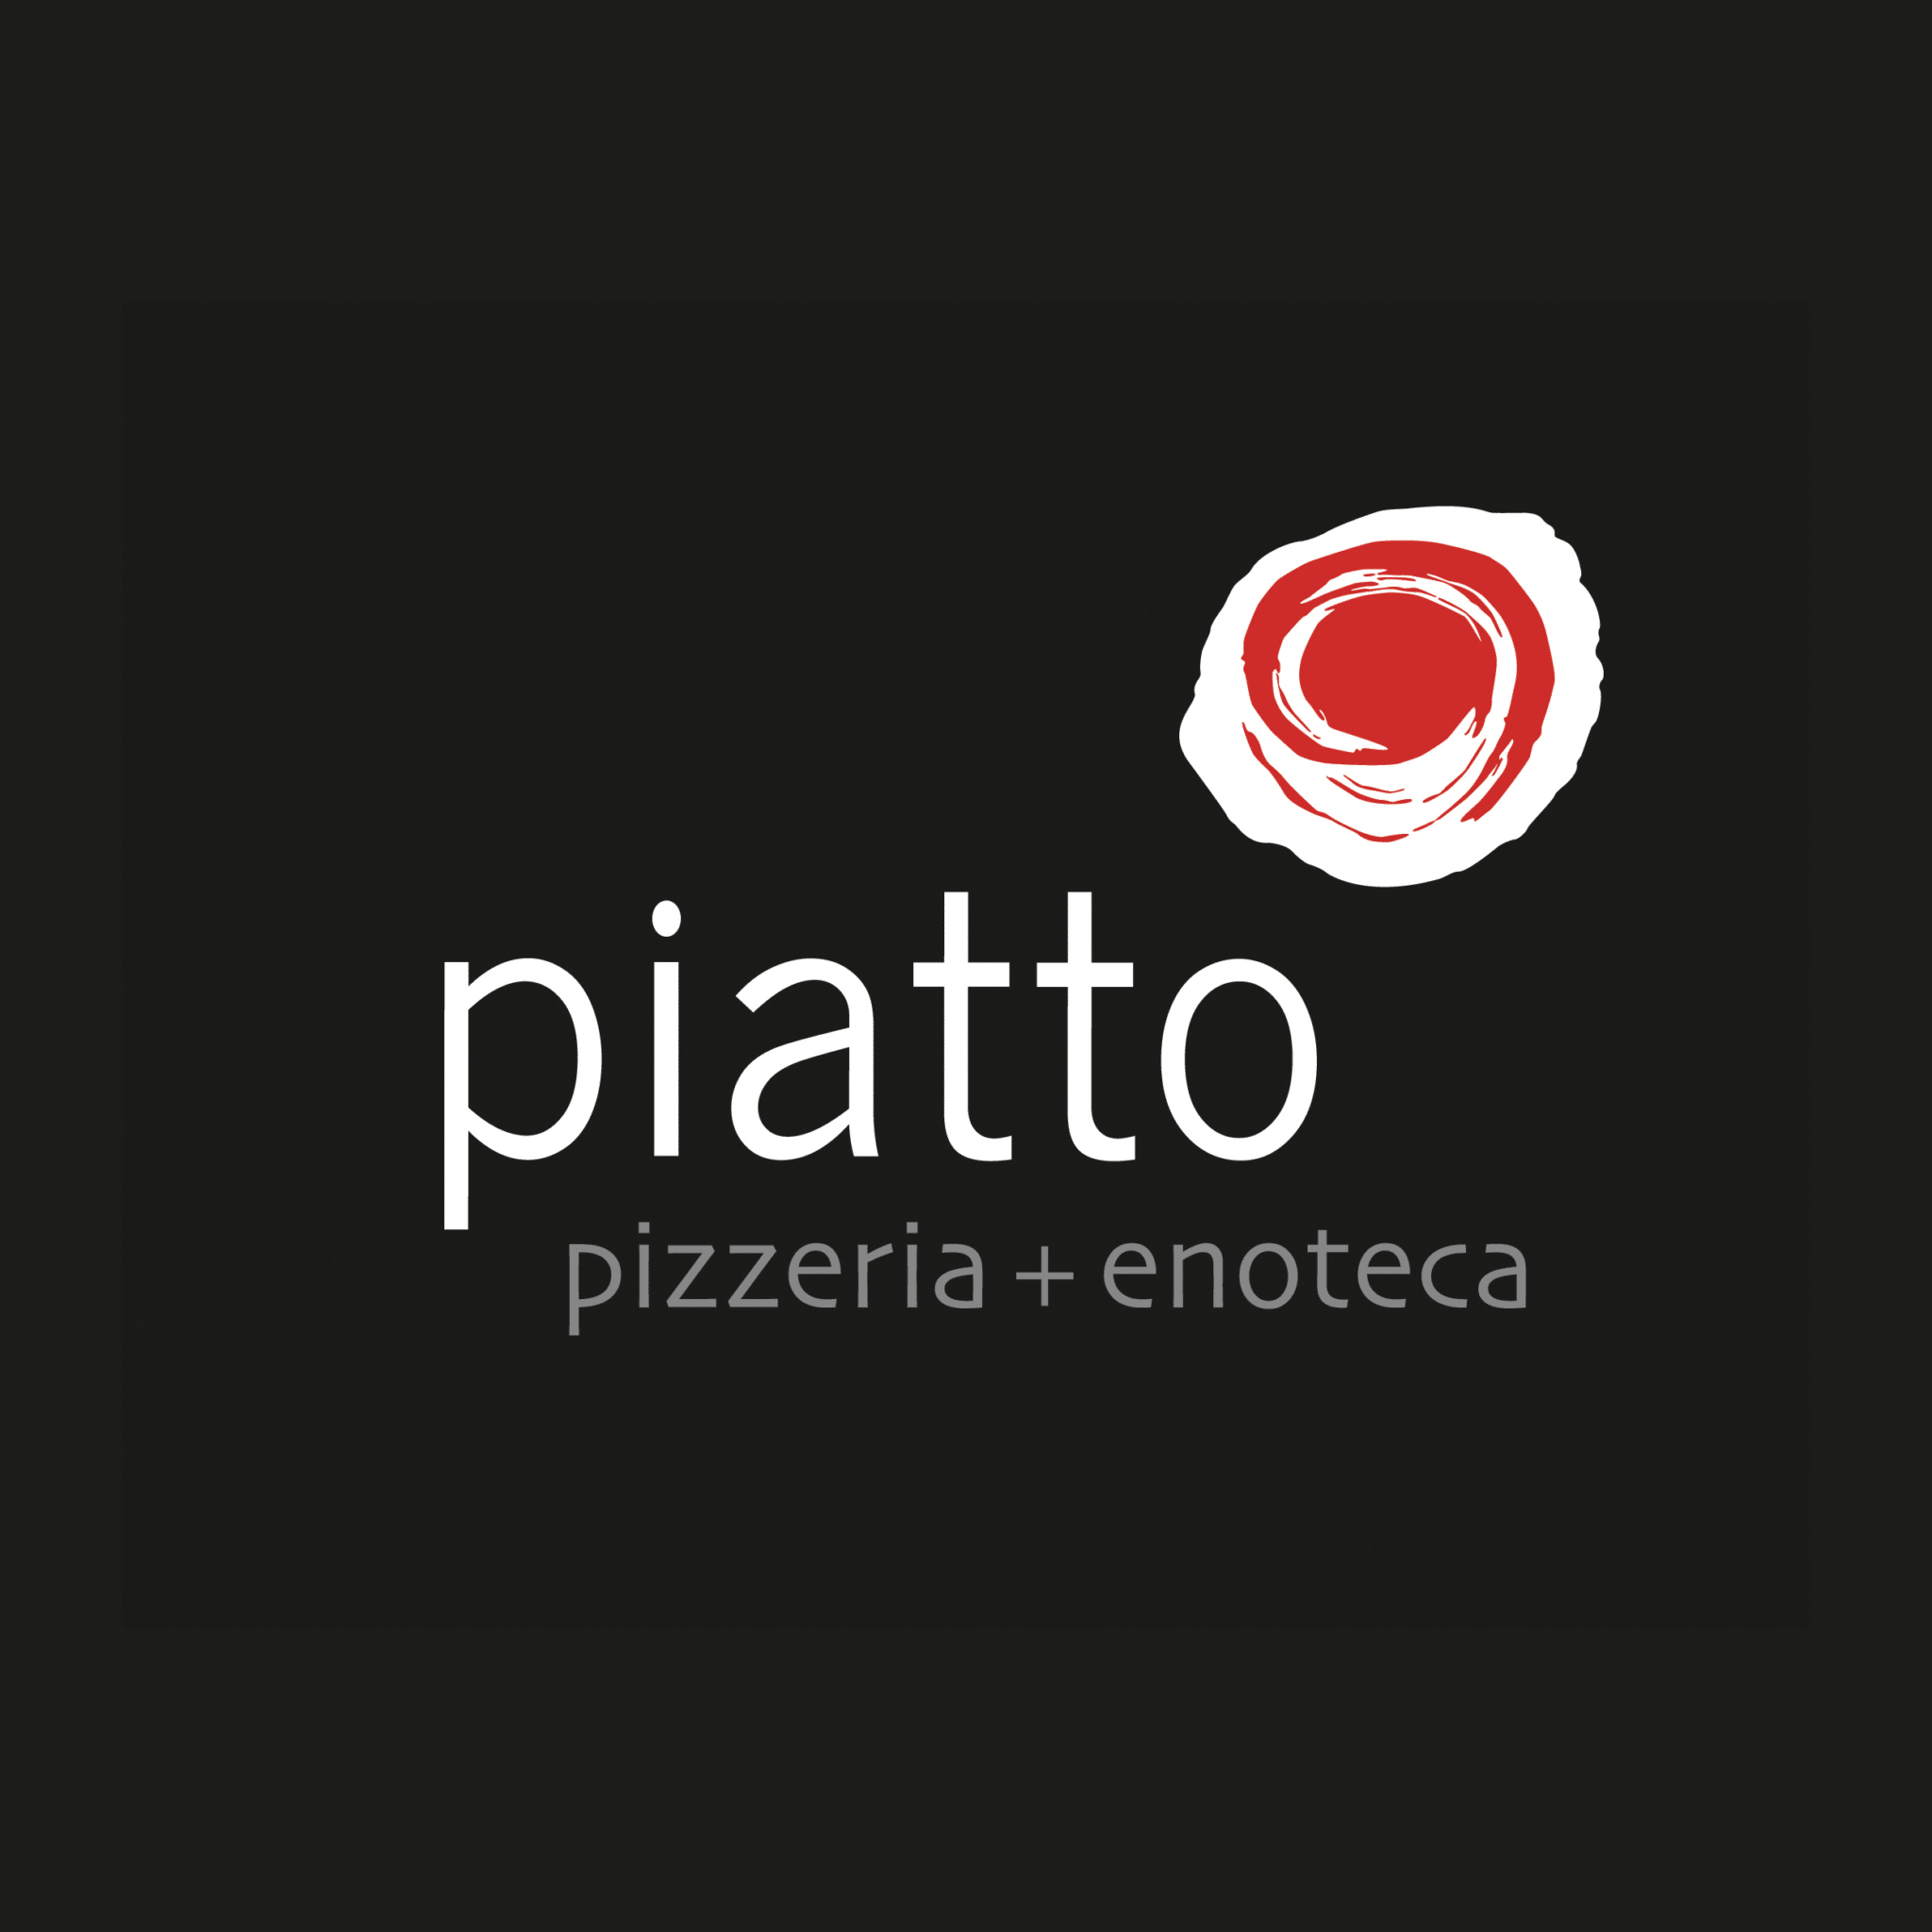 Wine & Dine at Piatto Pizzeria + Enoteca!